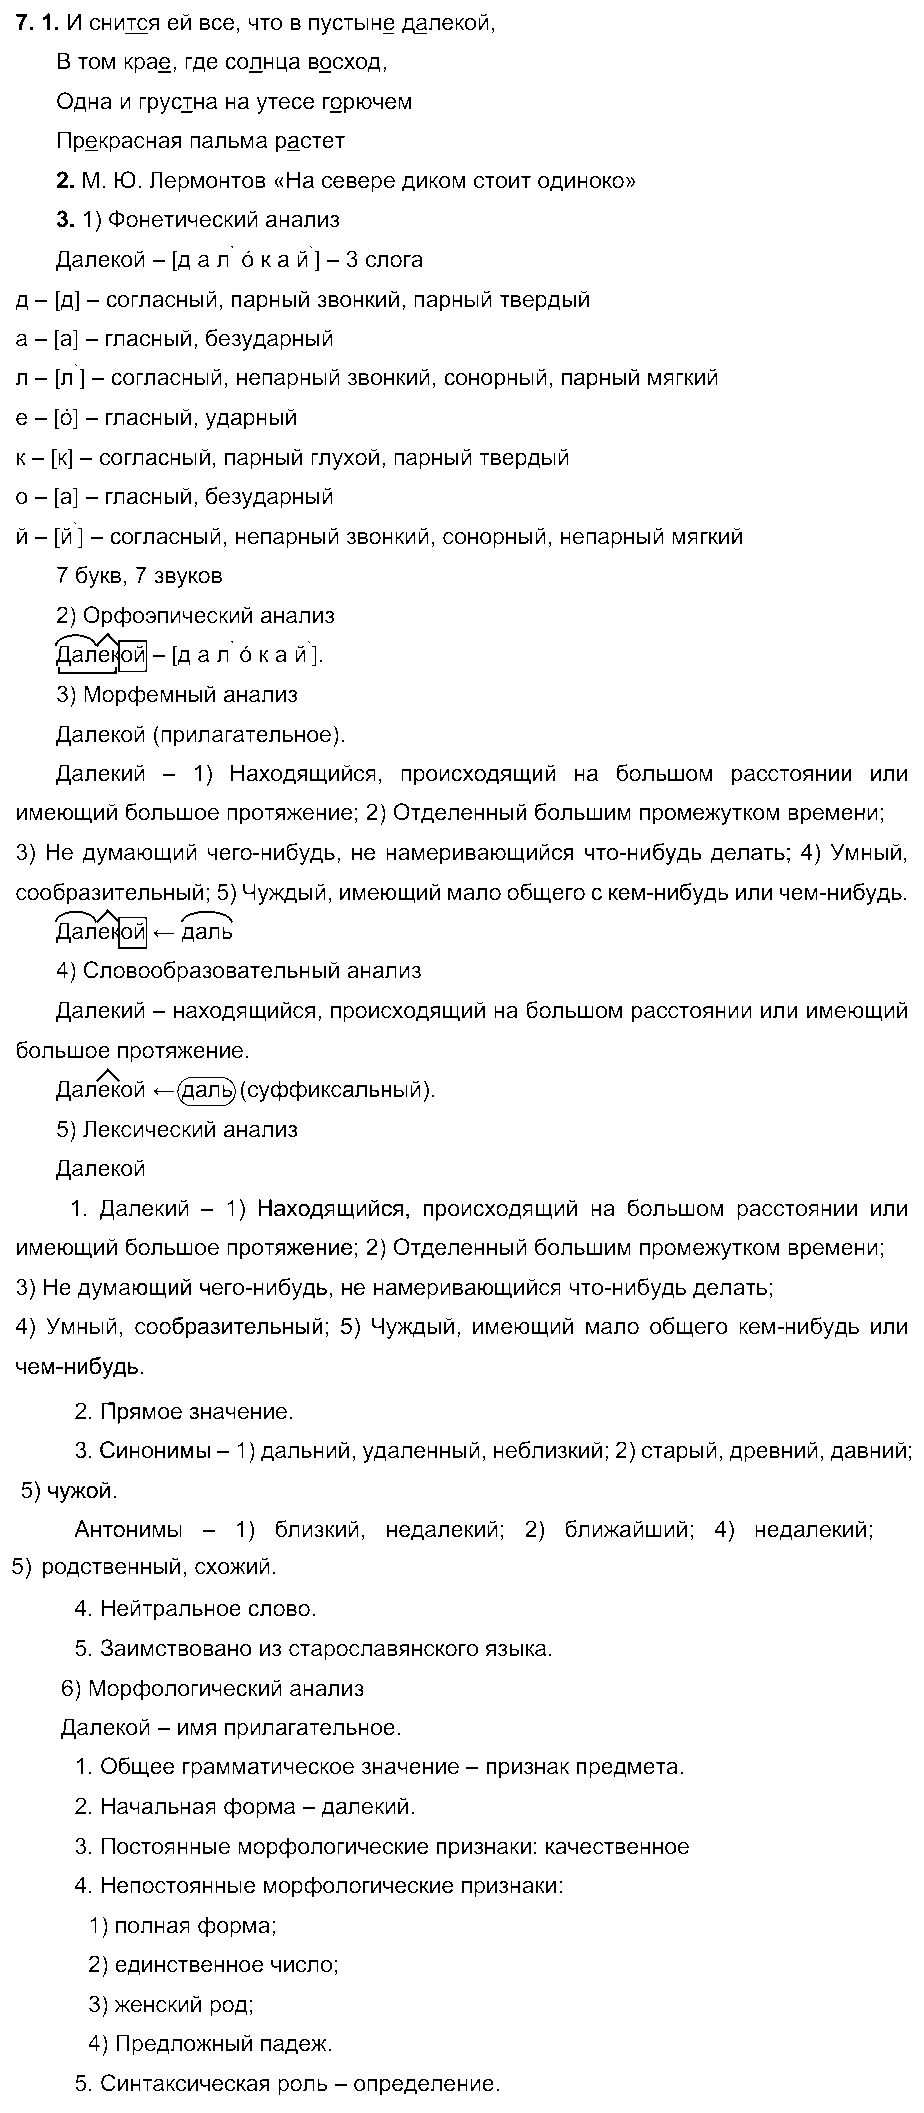 ГДЗ Русский язык 6 класс - 7